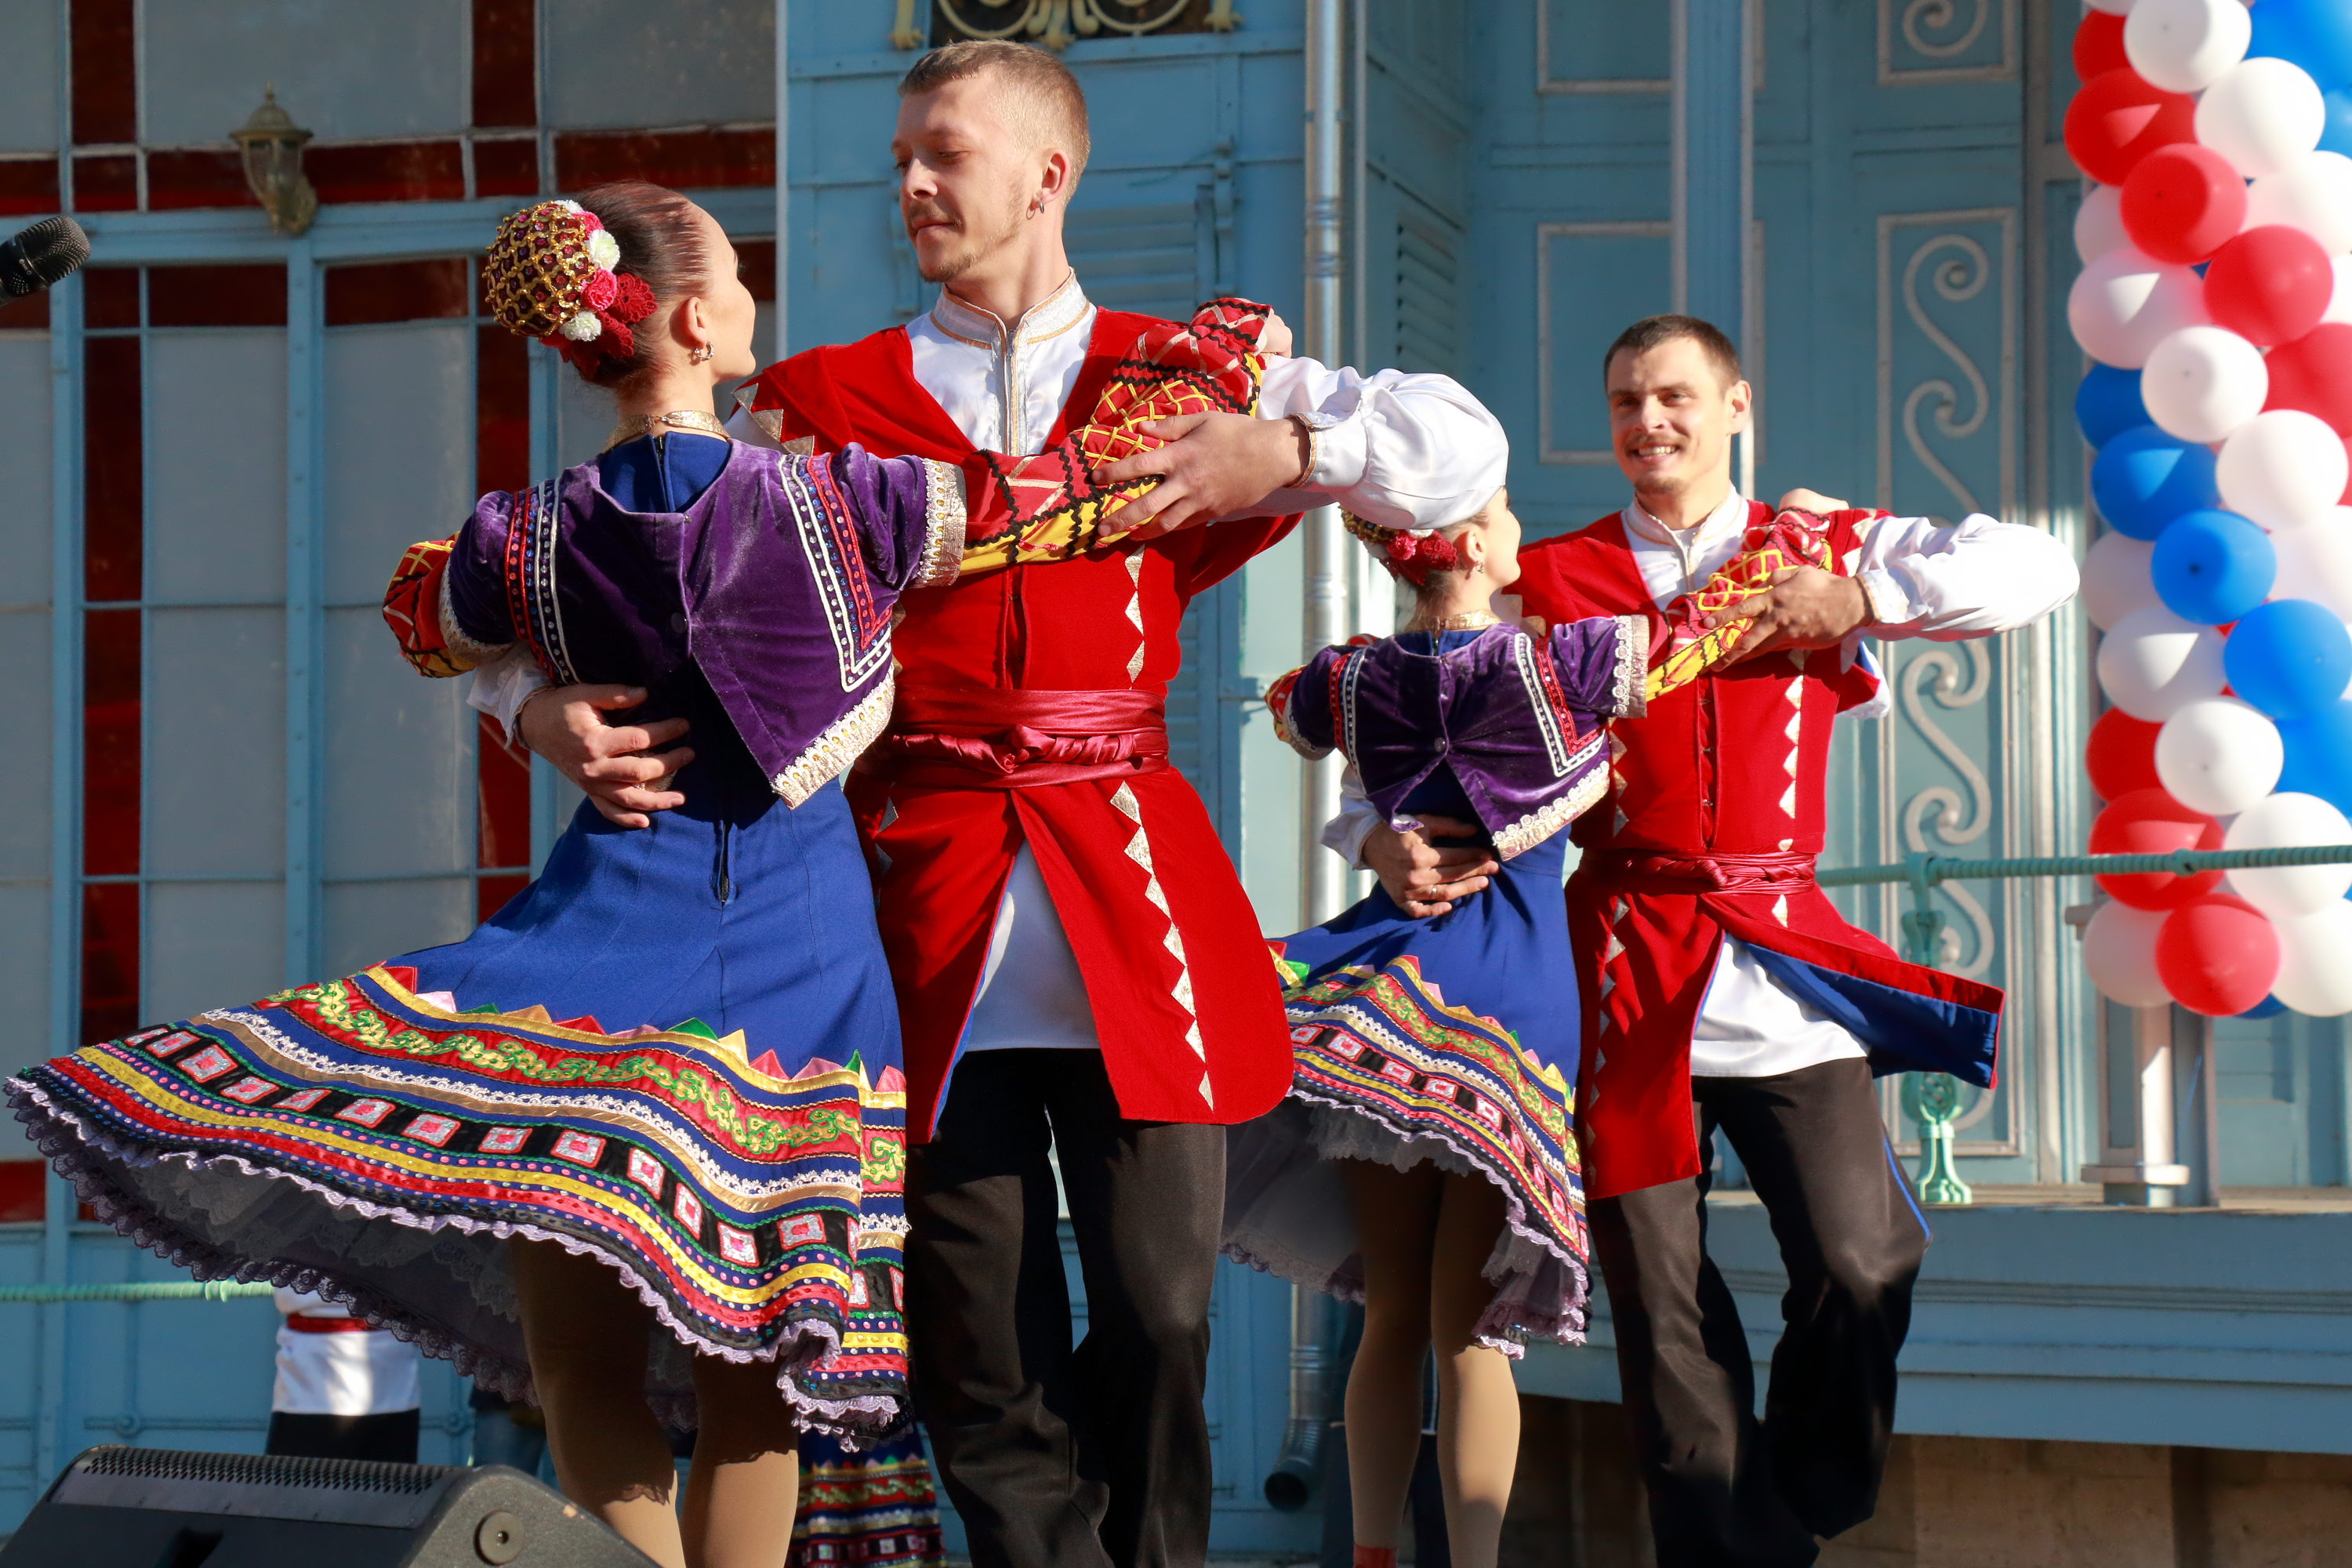 Οι Κοζάκοι με παραδοσιακά ρούχα χορεύουν στη σκηνή λαϊκούς χορούς. Φεστιβάλ προς τιμήν της Εθνικής Ημέρας Ενότητας.